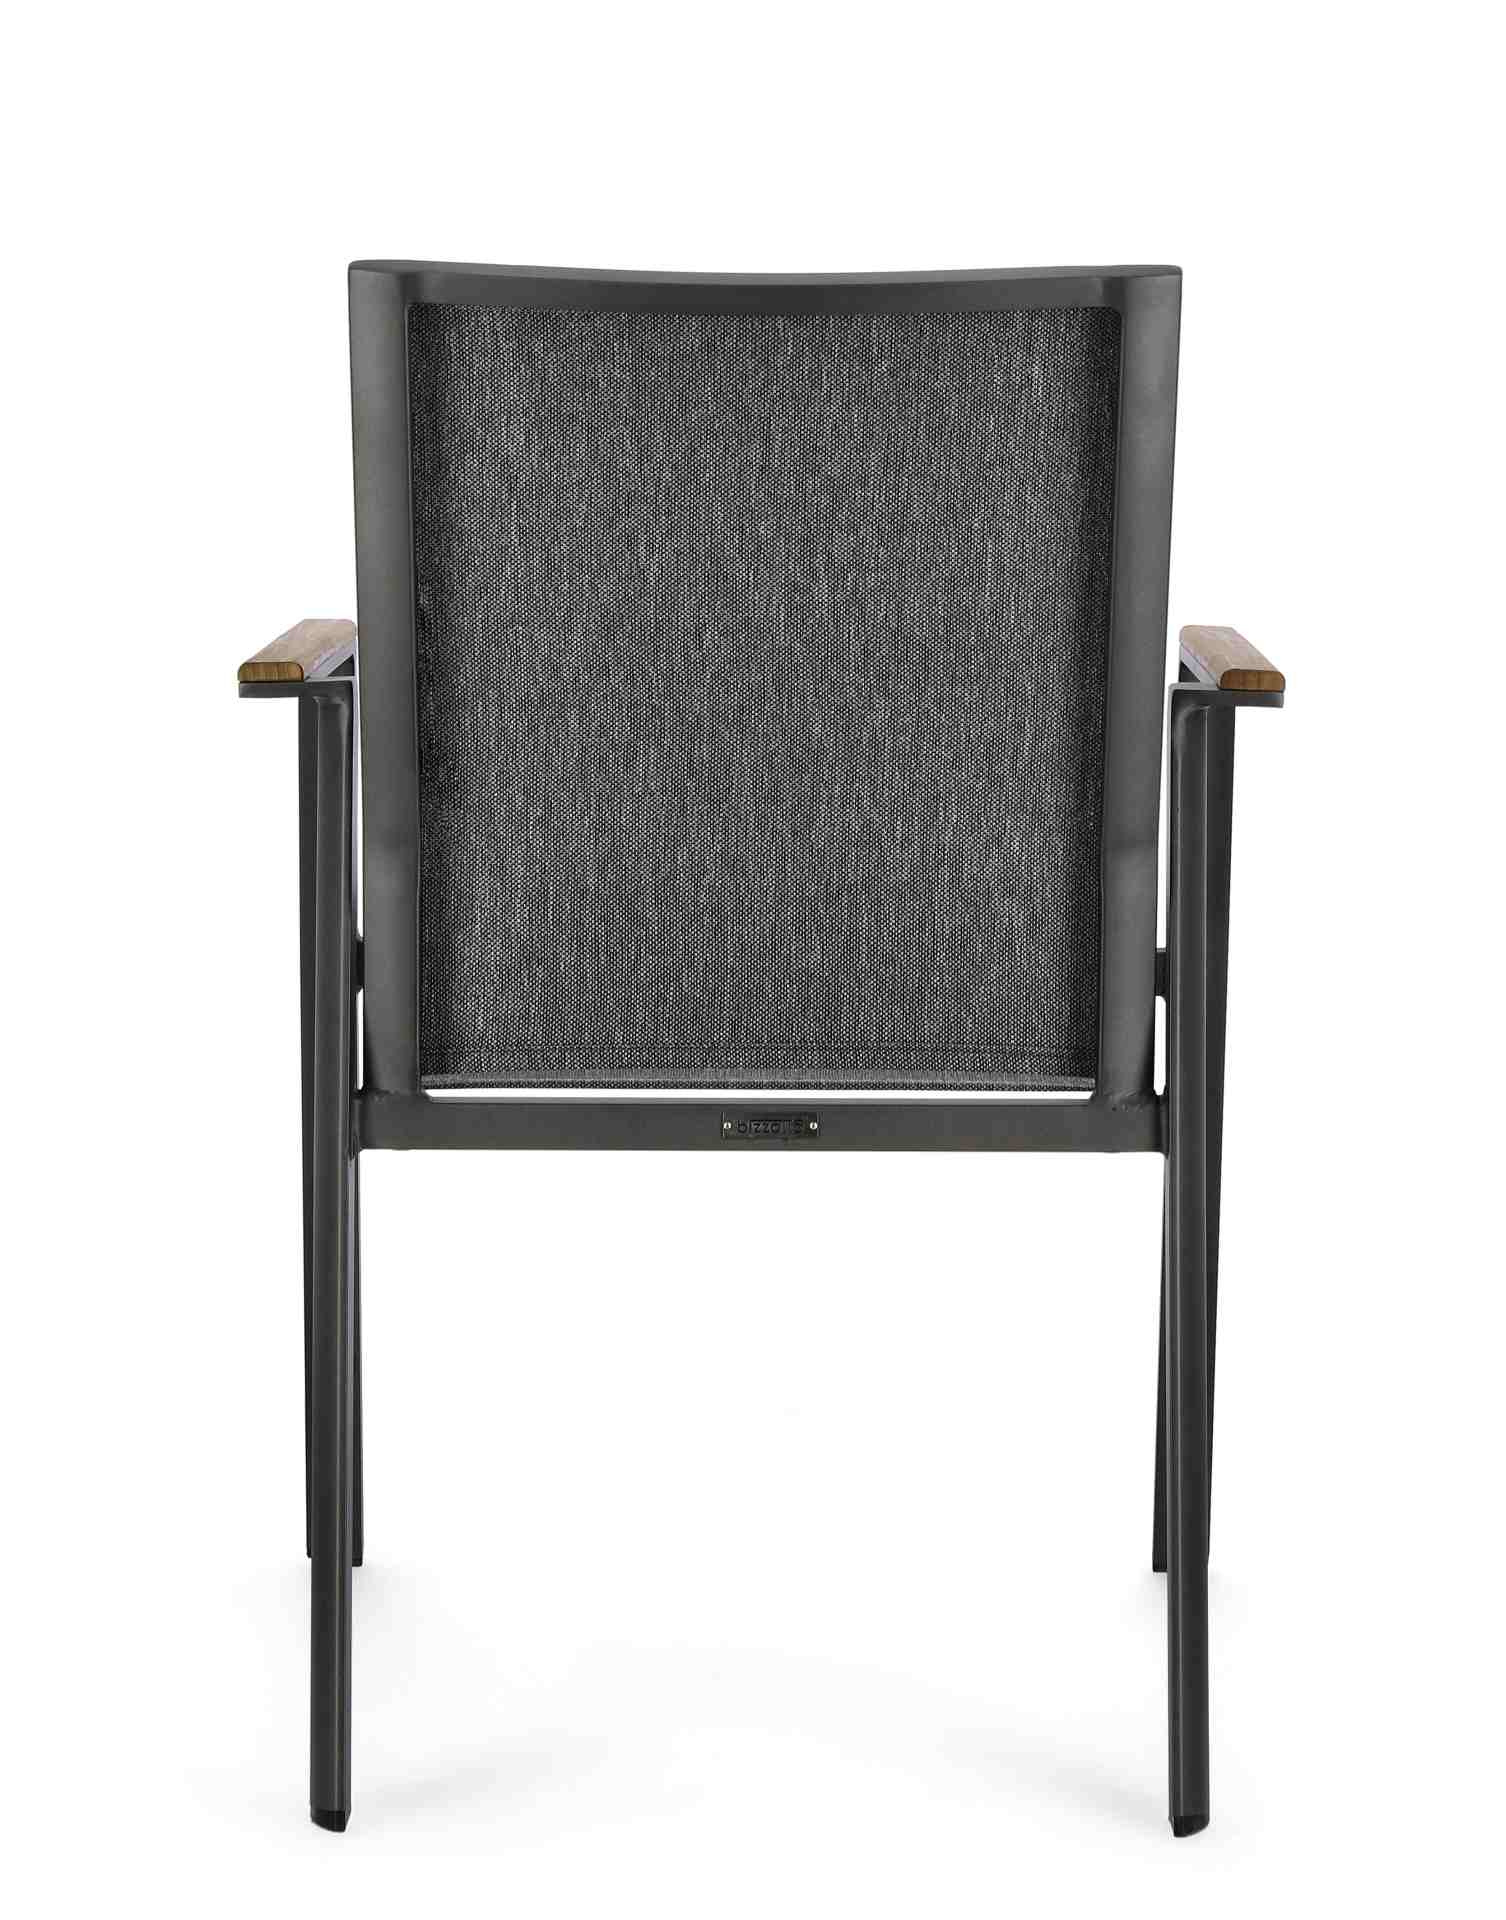 Der Gartenstuhl Cameron überzeugt mit seinem modernen Design. Gefertigt wurde er aus Textilene, welcher einen Anthrazit Farbton besitzt. Das Gestell ist aus Aluminium und hat eine Anthrazit Farbe. Der Stuhl verfügt über eine Sitzhöhe von 44 cm und ist für